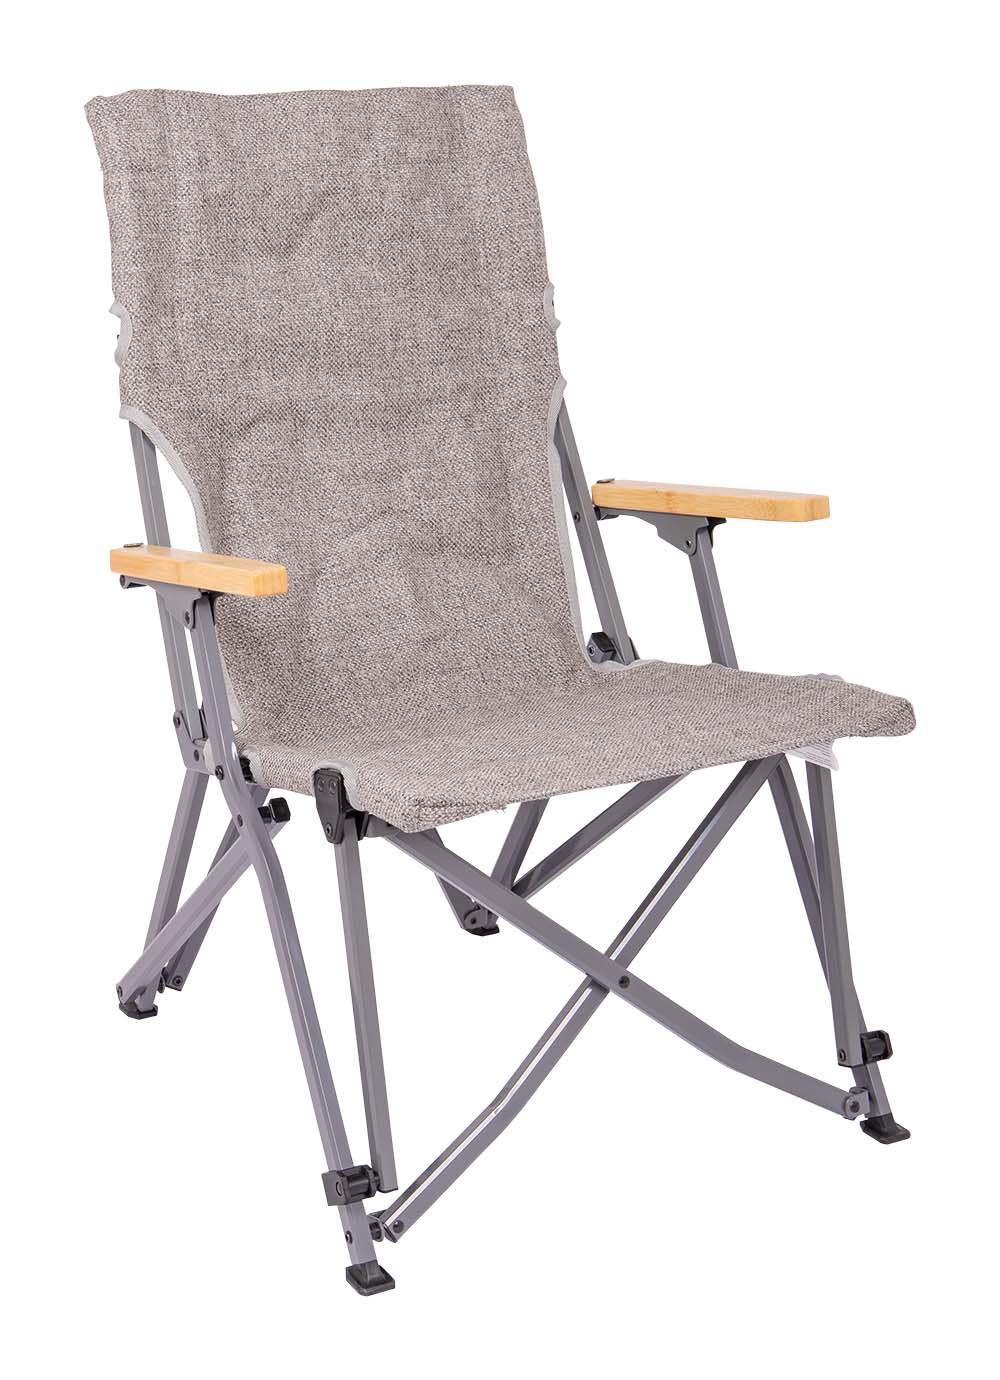 1204810 Una cómoda silla plegable de la Urban Outdoor collection con reposabrazos de bambú. La tapicería está hecha de Nika, que tiene aspecto de lino. La estructura de aluminio gris oscuro hace que la silla sea fácil de plegar. Se puede utilizar en el exterior, en el jardín o en el camping, en casa, en el balcón o en el salón. Compacto y fácil de transportar en la bolsa de transporte incluida.